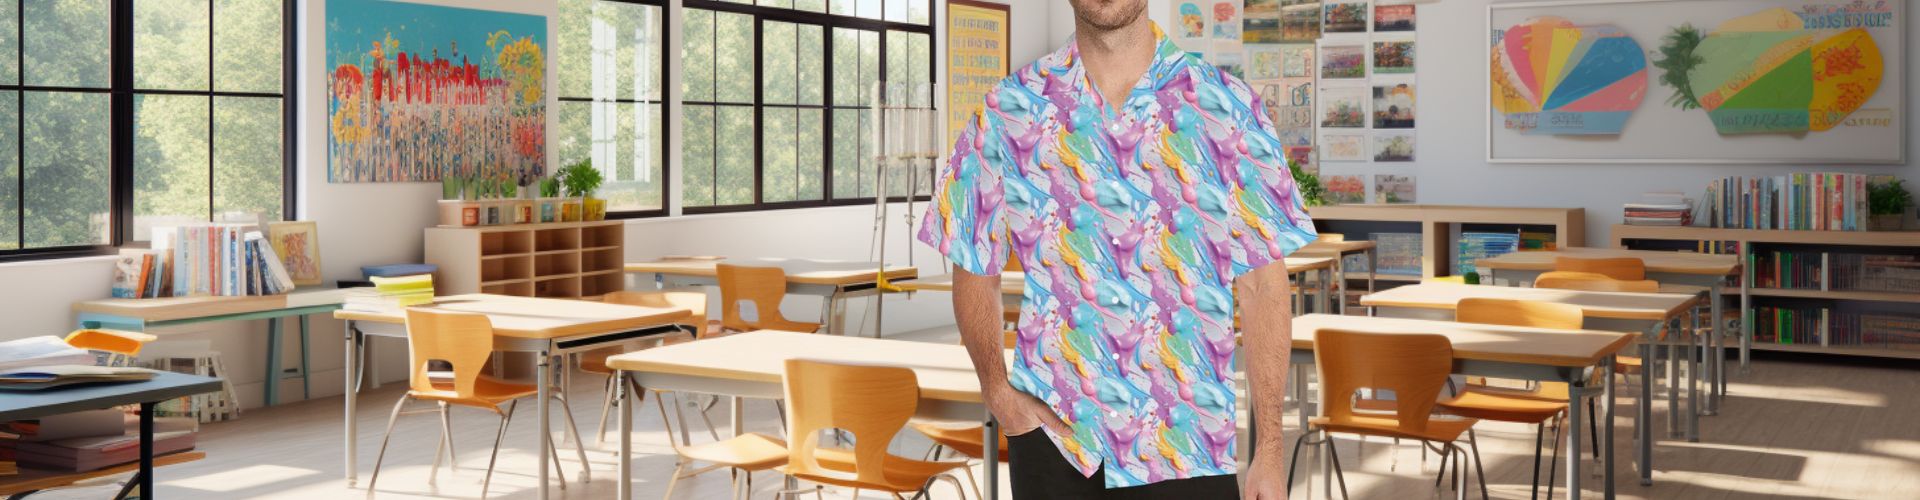 Art teacher wearing 3D paint splatter design in classroom